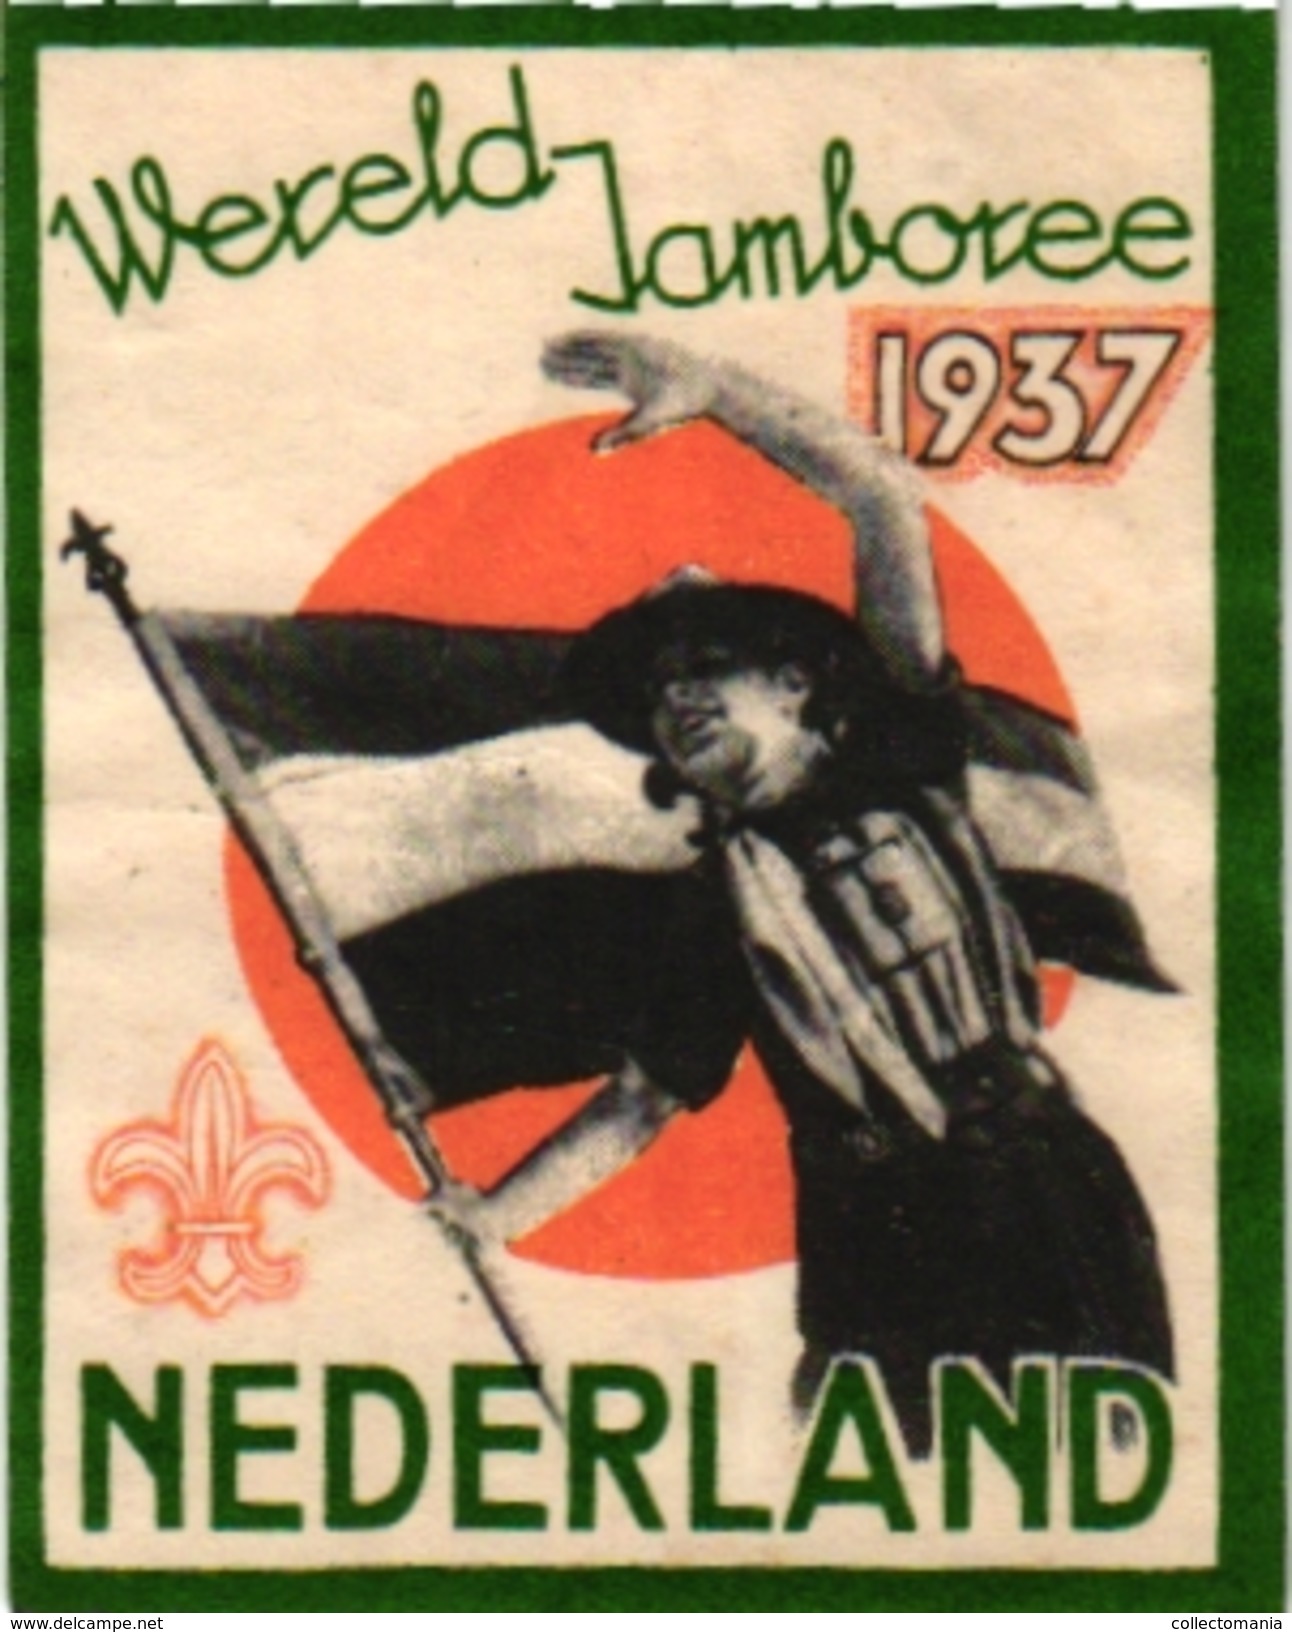 2 Poster Stamps Cinderella   SCOUT Padvinder  PFADFINDER   Wereld Jamboree NEDERLAND 1937 Australia Corroboree 1936 - Movimiento Scout